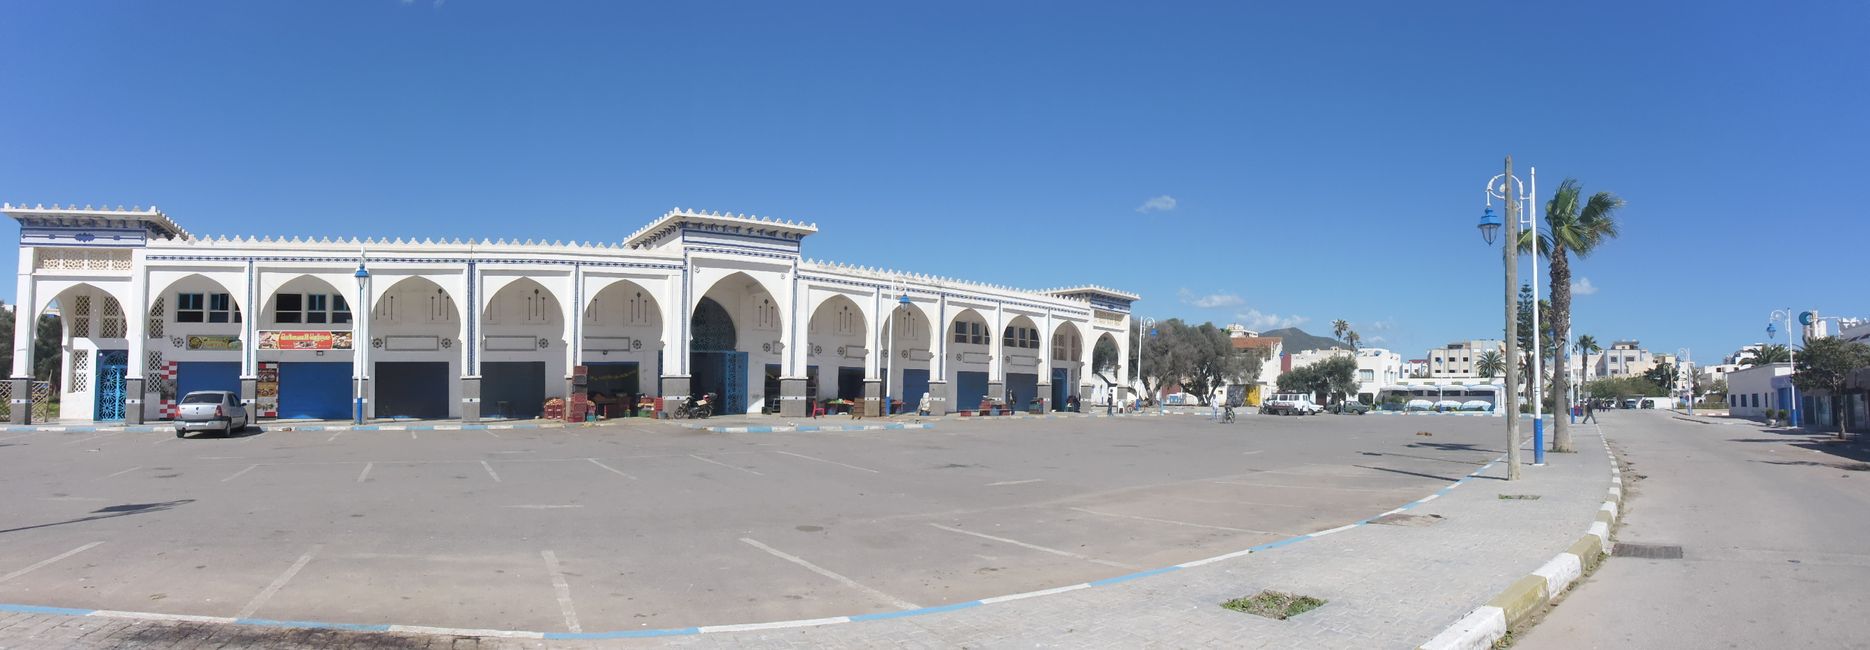 Der Markt von Oued Laou